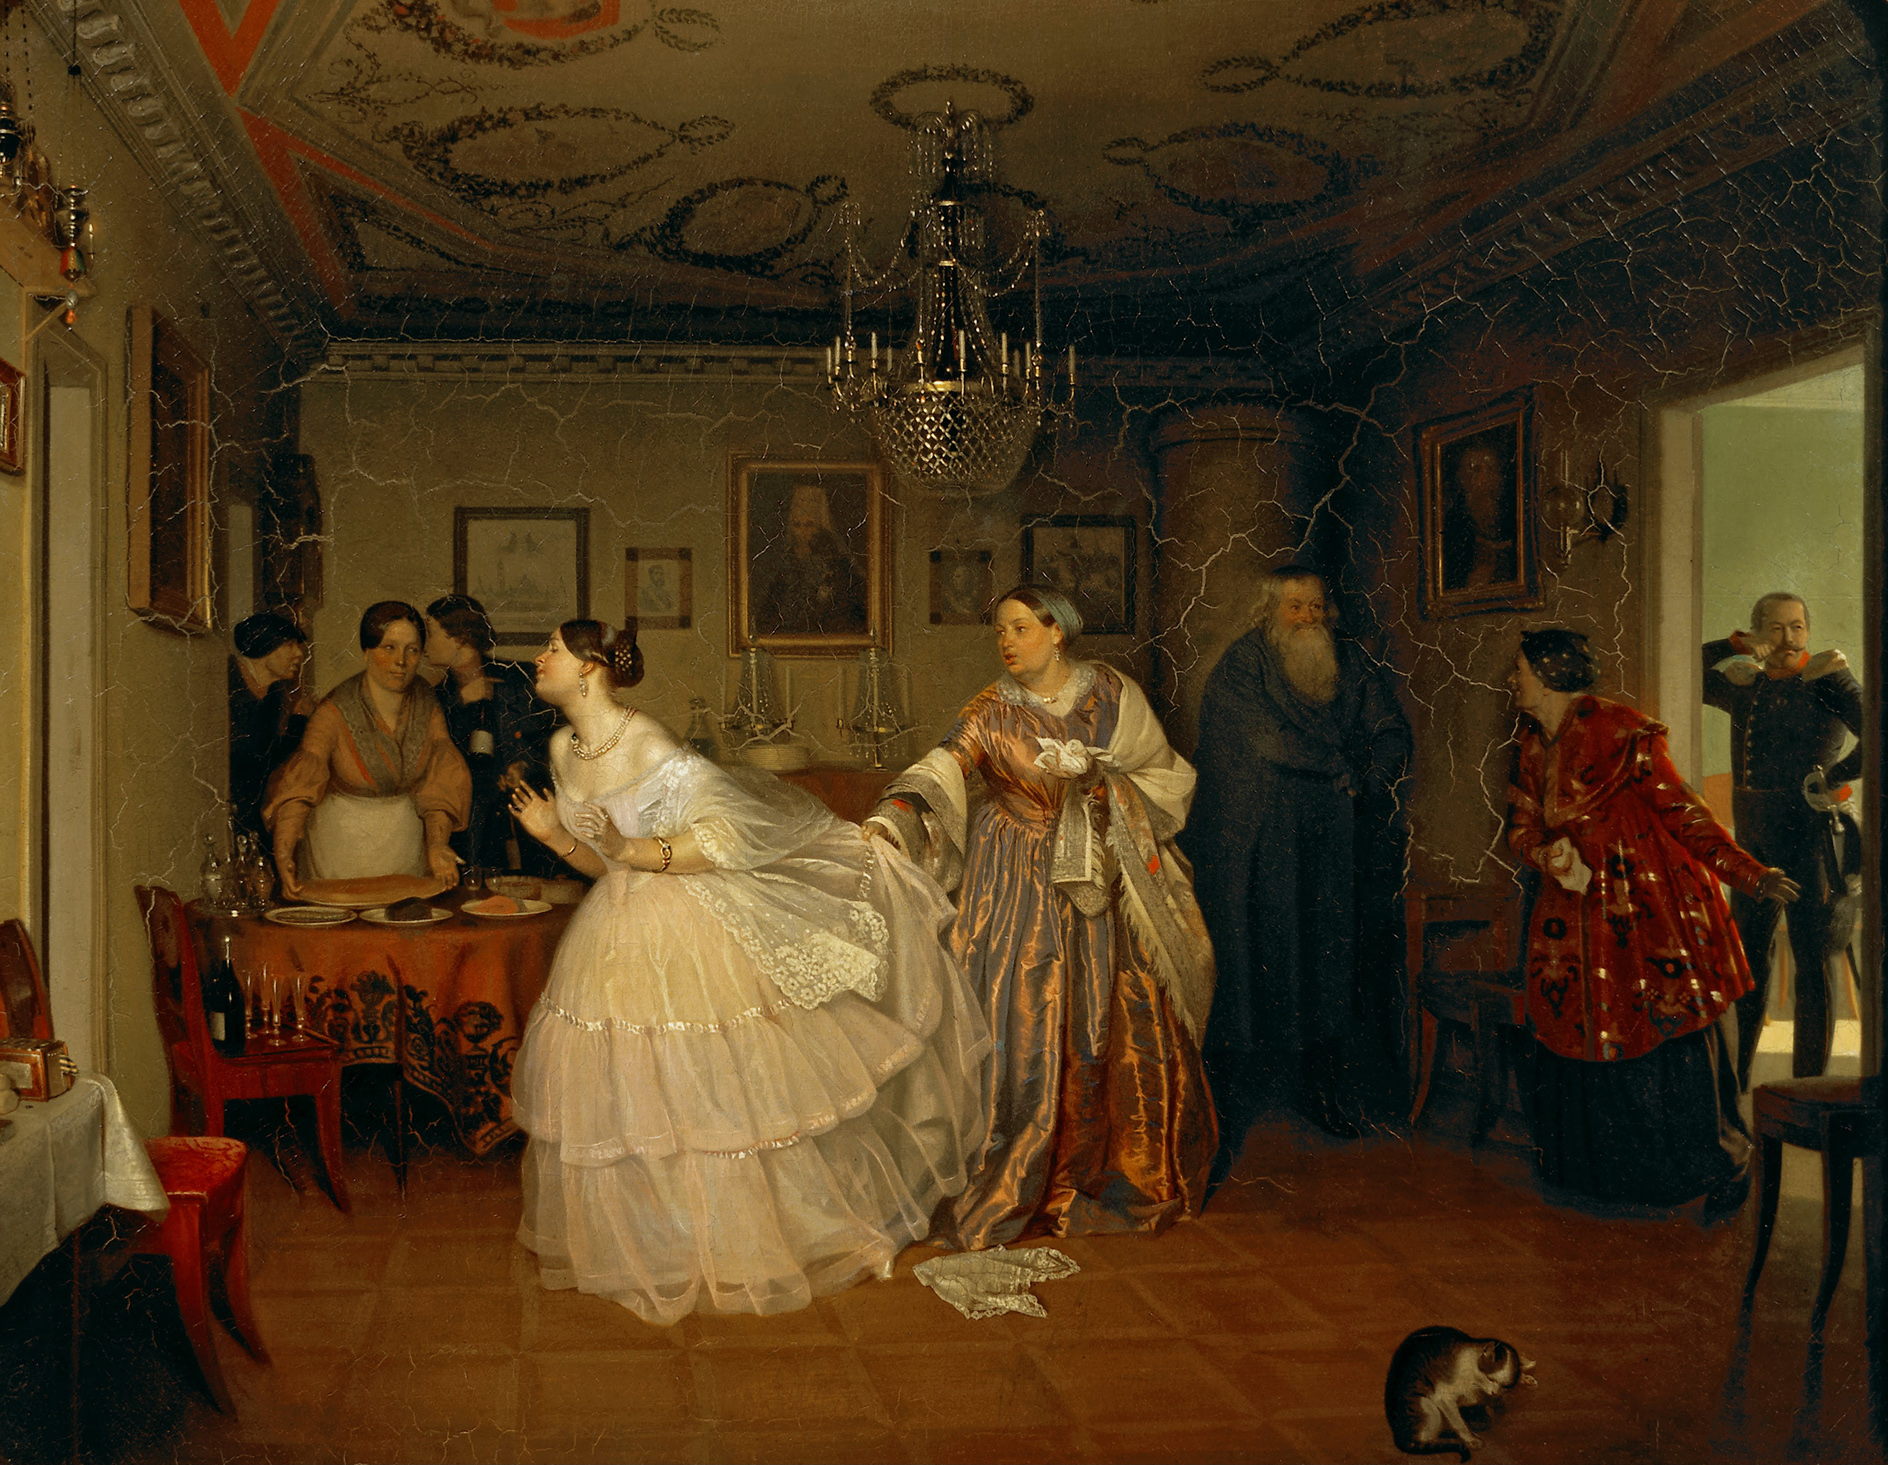 Павел Андреевич Федотов (1815 - 1852) - известный русский художник